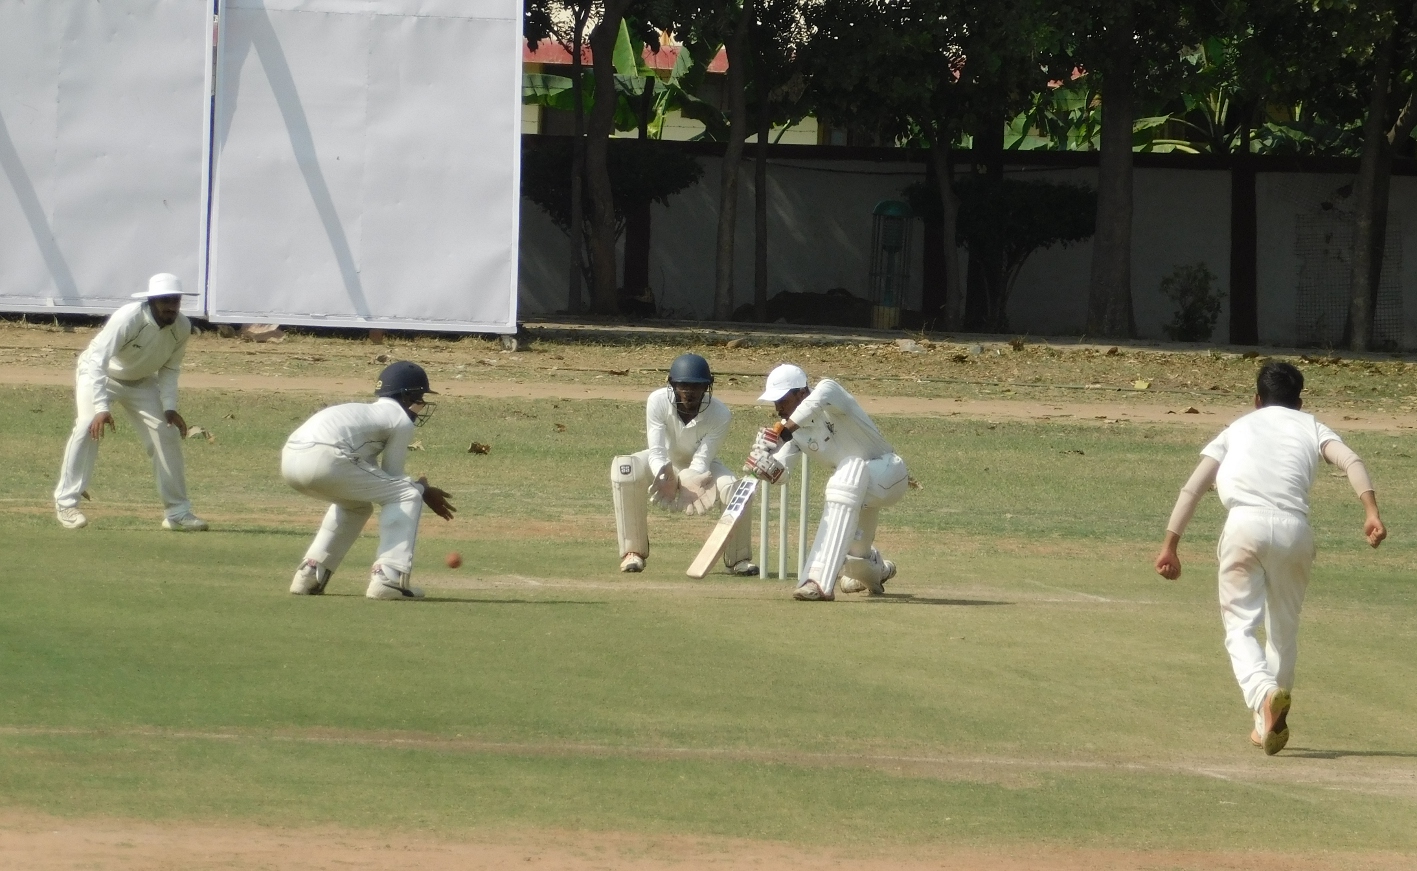 Sagar's team led by Lee 58 runs